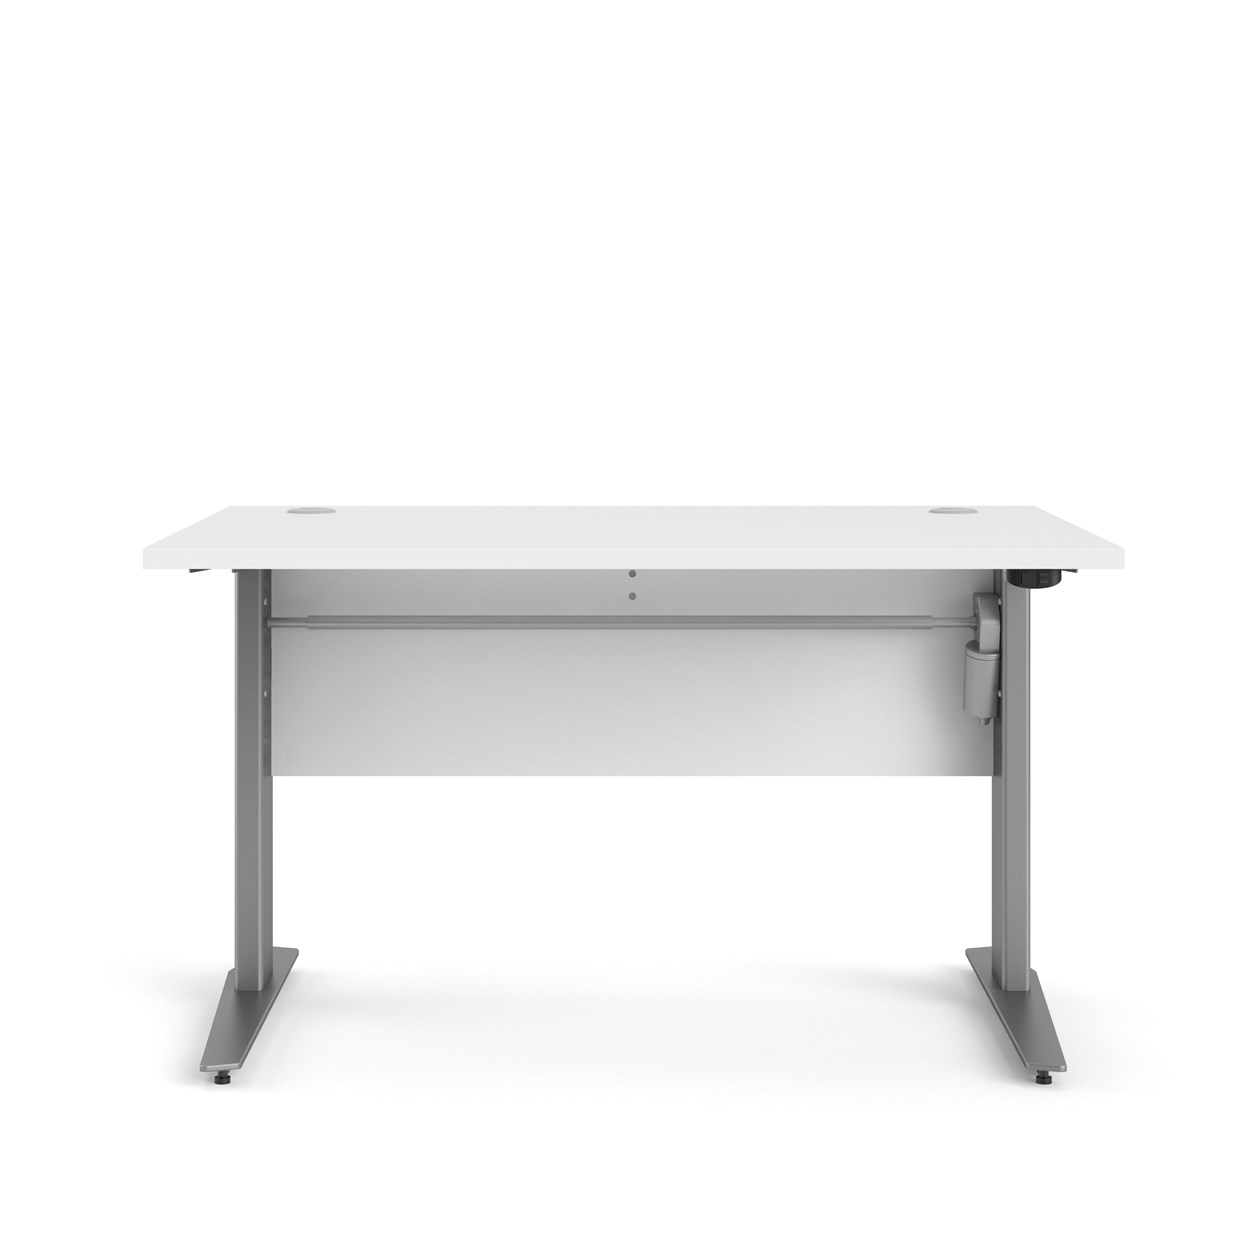 #3 - Futura hævesænkebord, 120,1 x 80,1 cm med fronplade